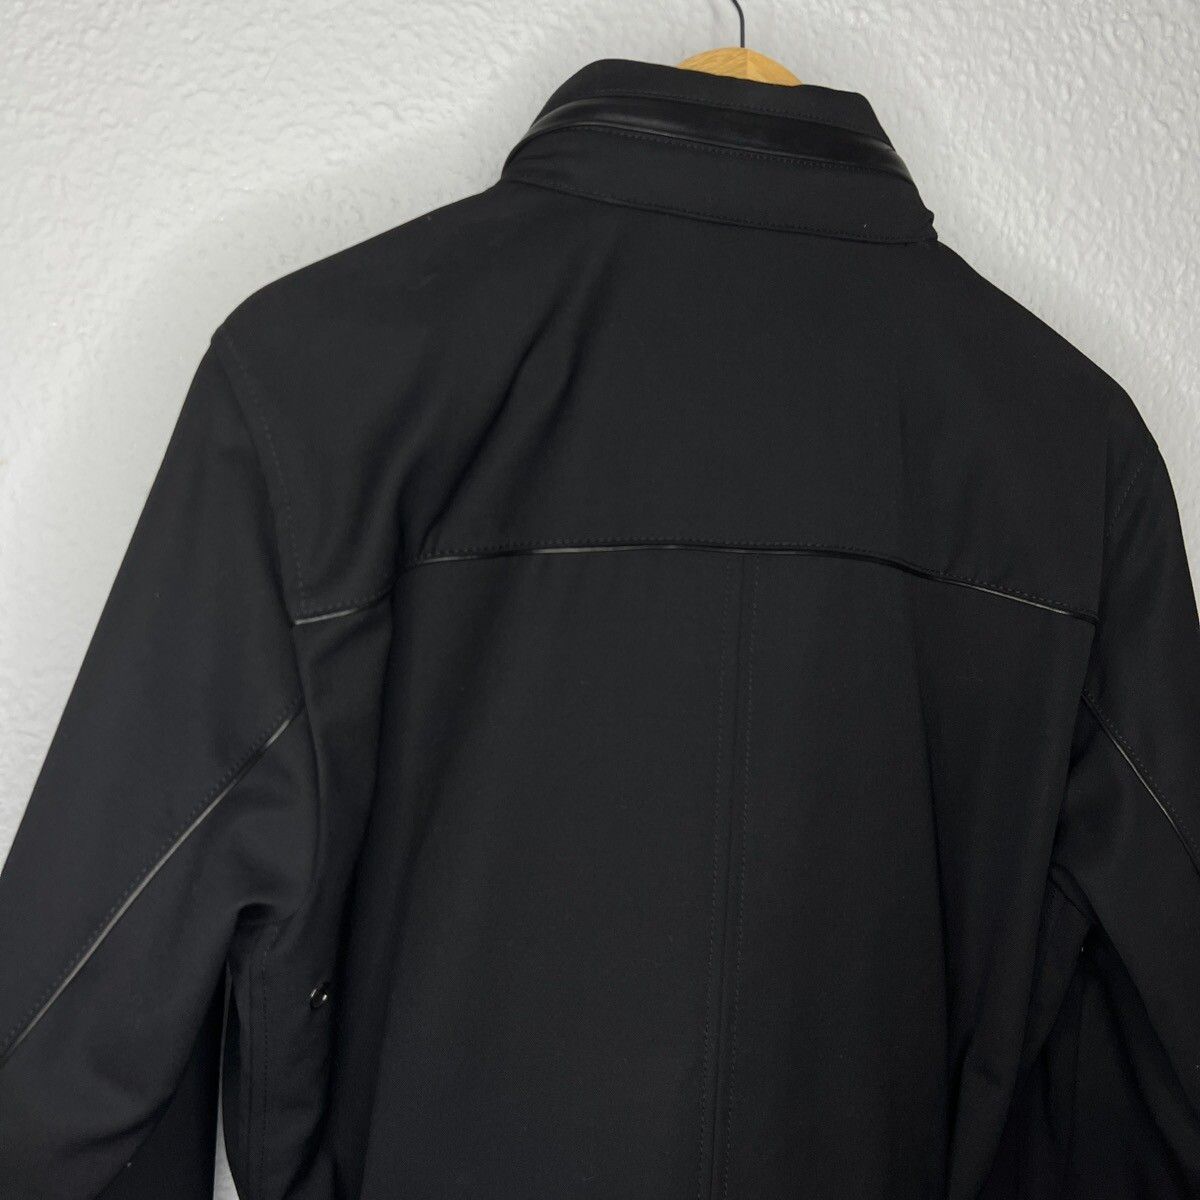 Prada Prada Milano Military Jacket Belted Coat Black Wool Designer Size US M / EU 48-50 / 2 - 14 Thumbnail